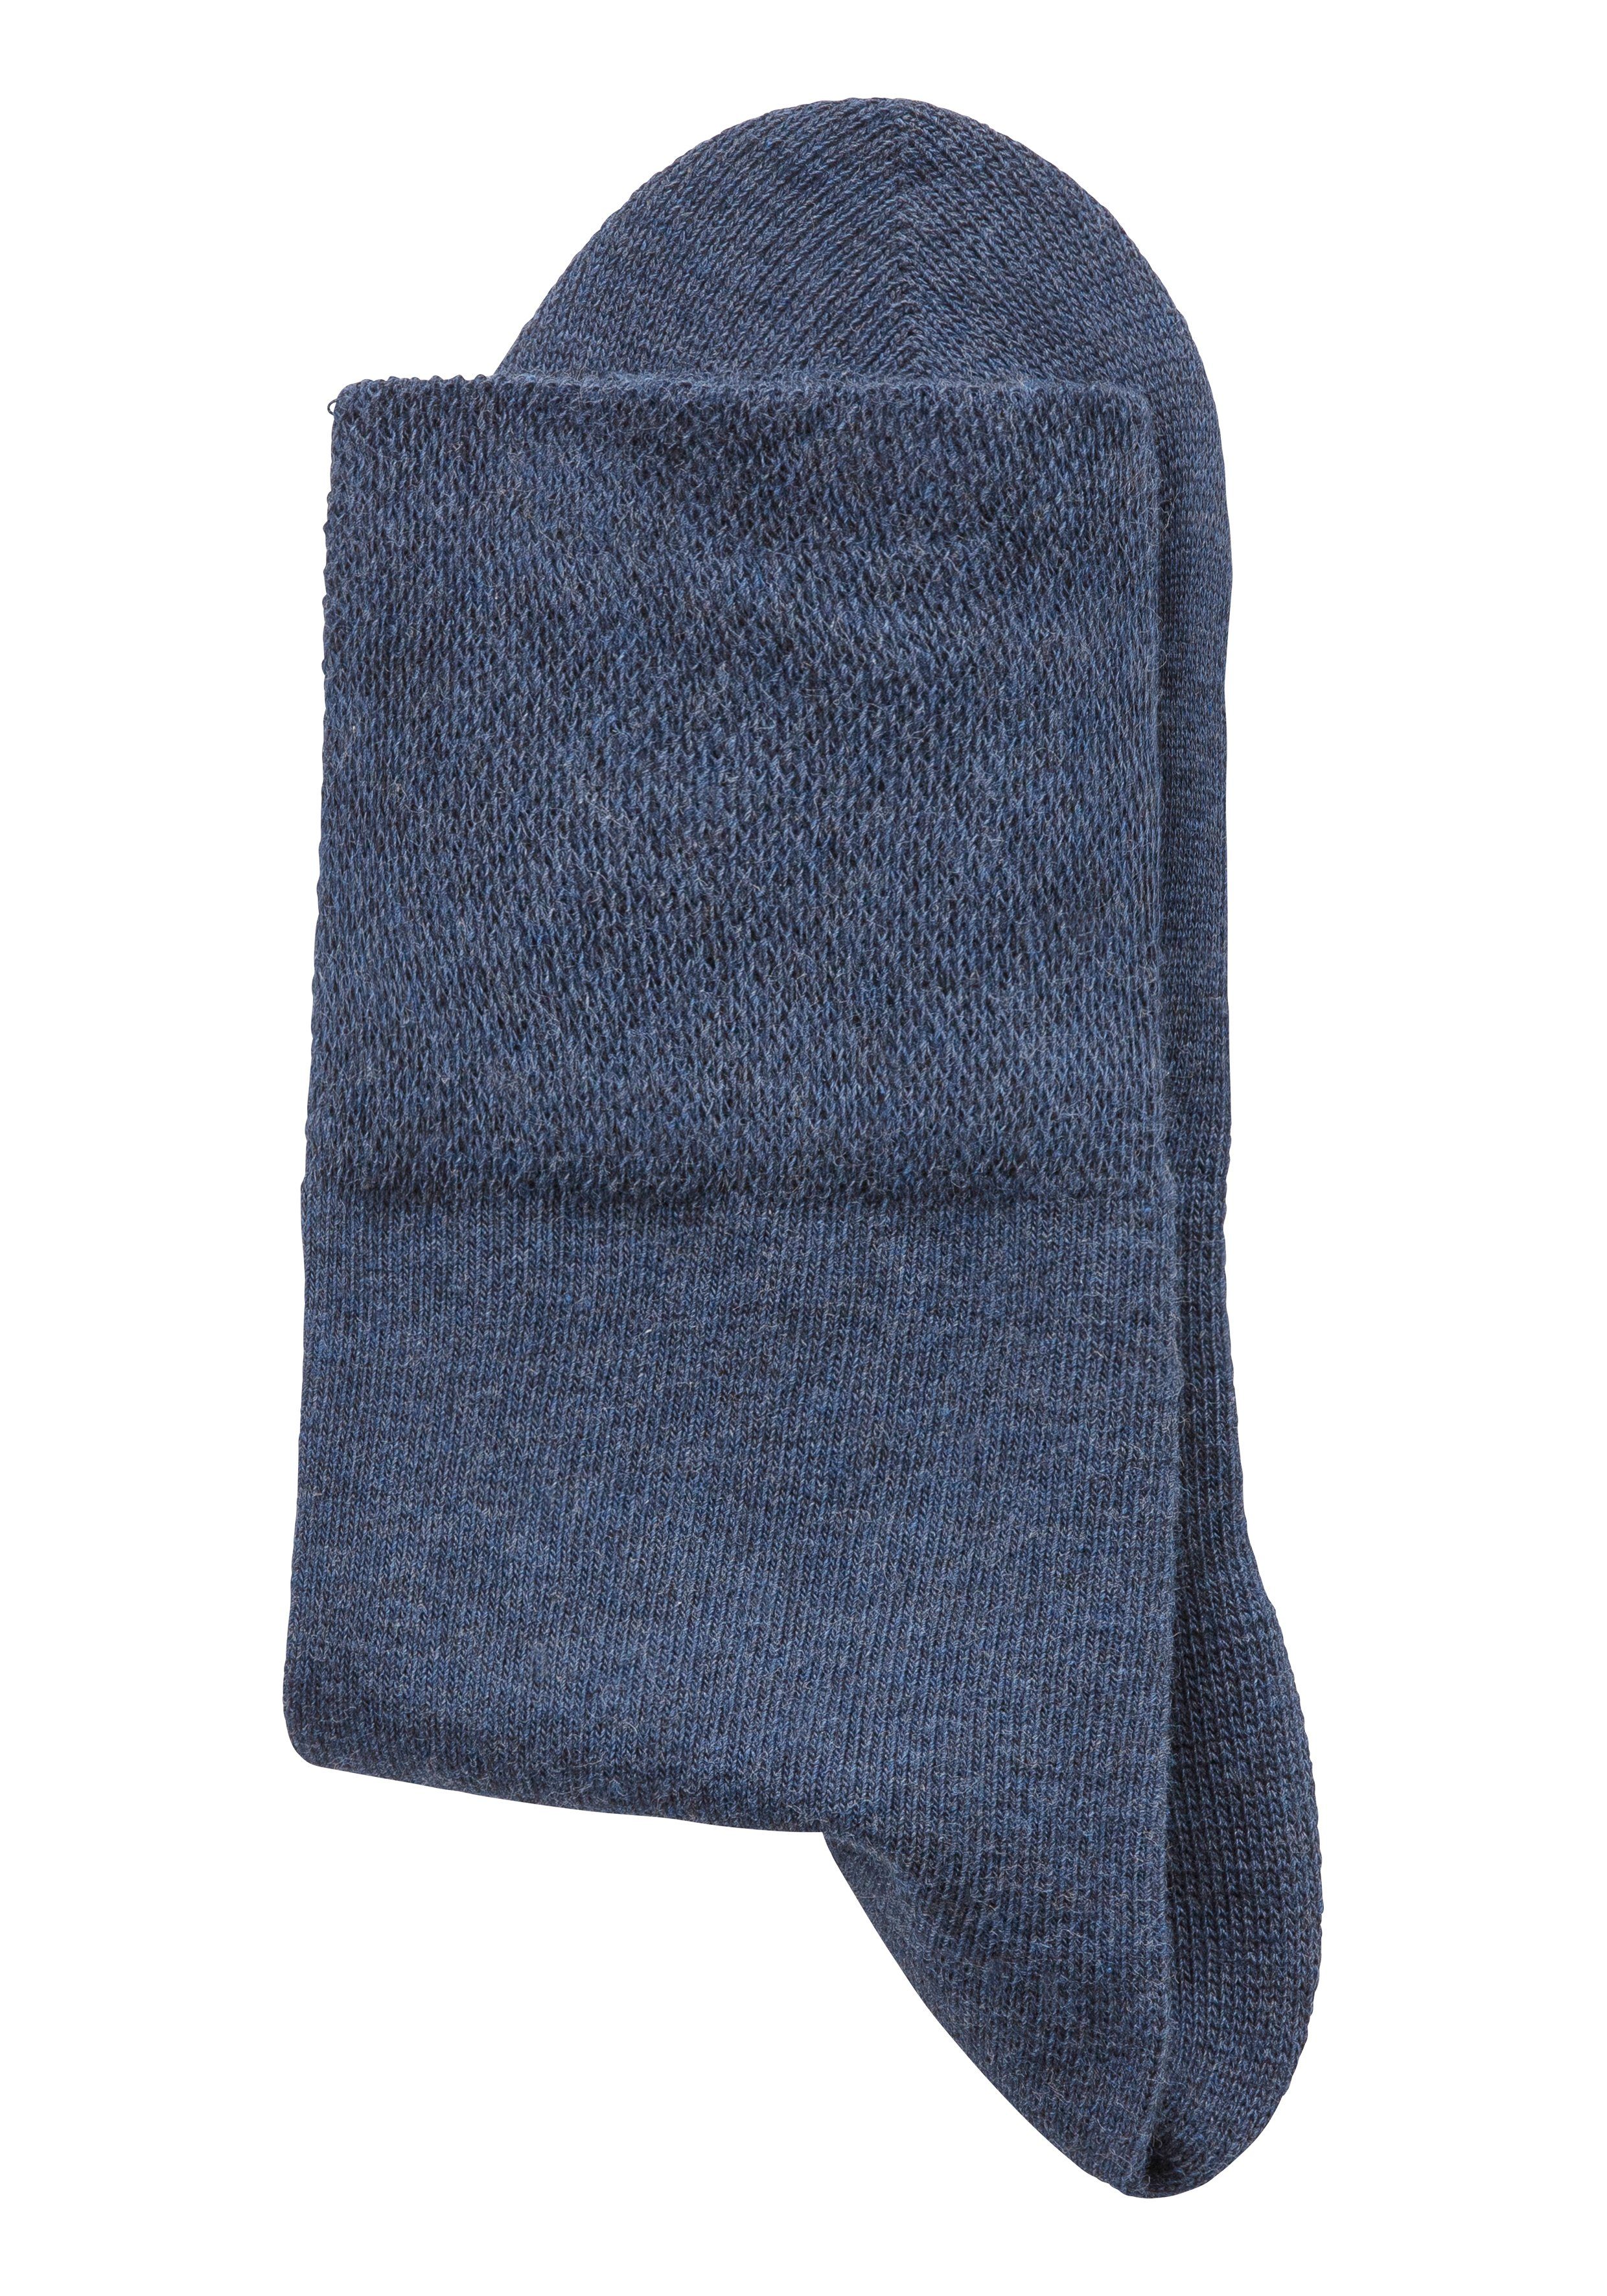 Wäsche/Bademode Socken H.I.S Socken (6-Paar) mit Komfortbund auch für Diabetiker geeignet